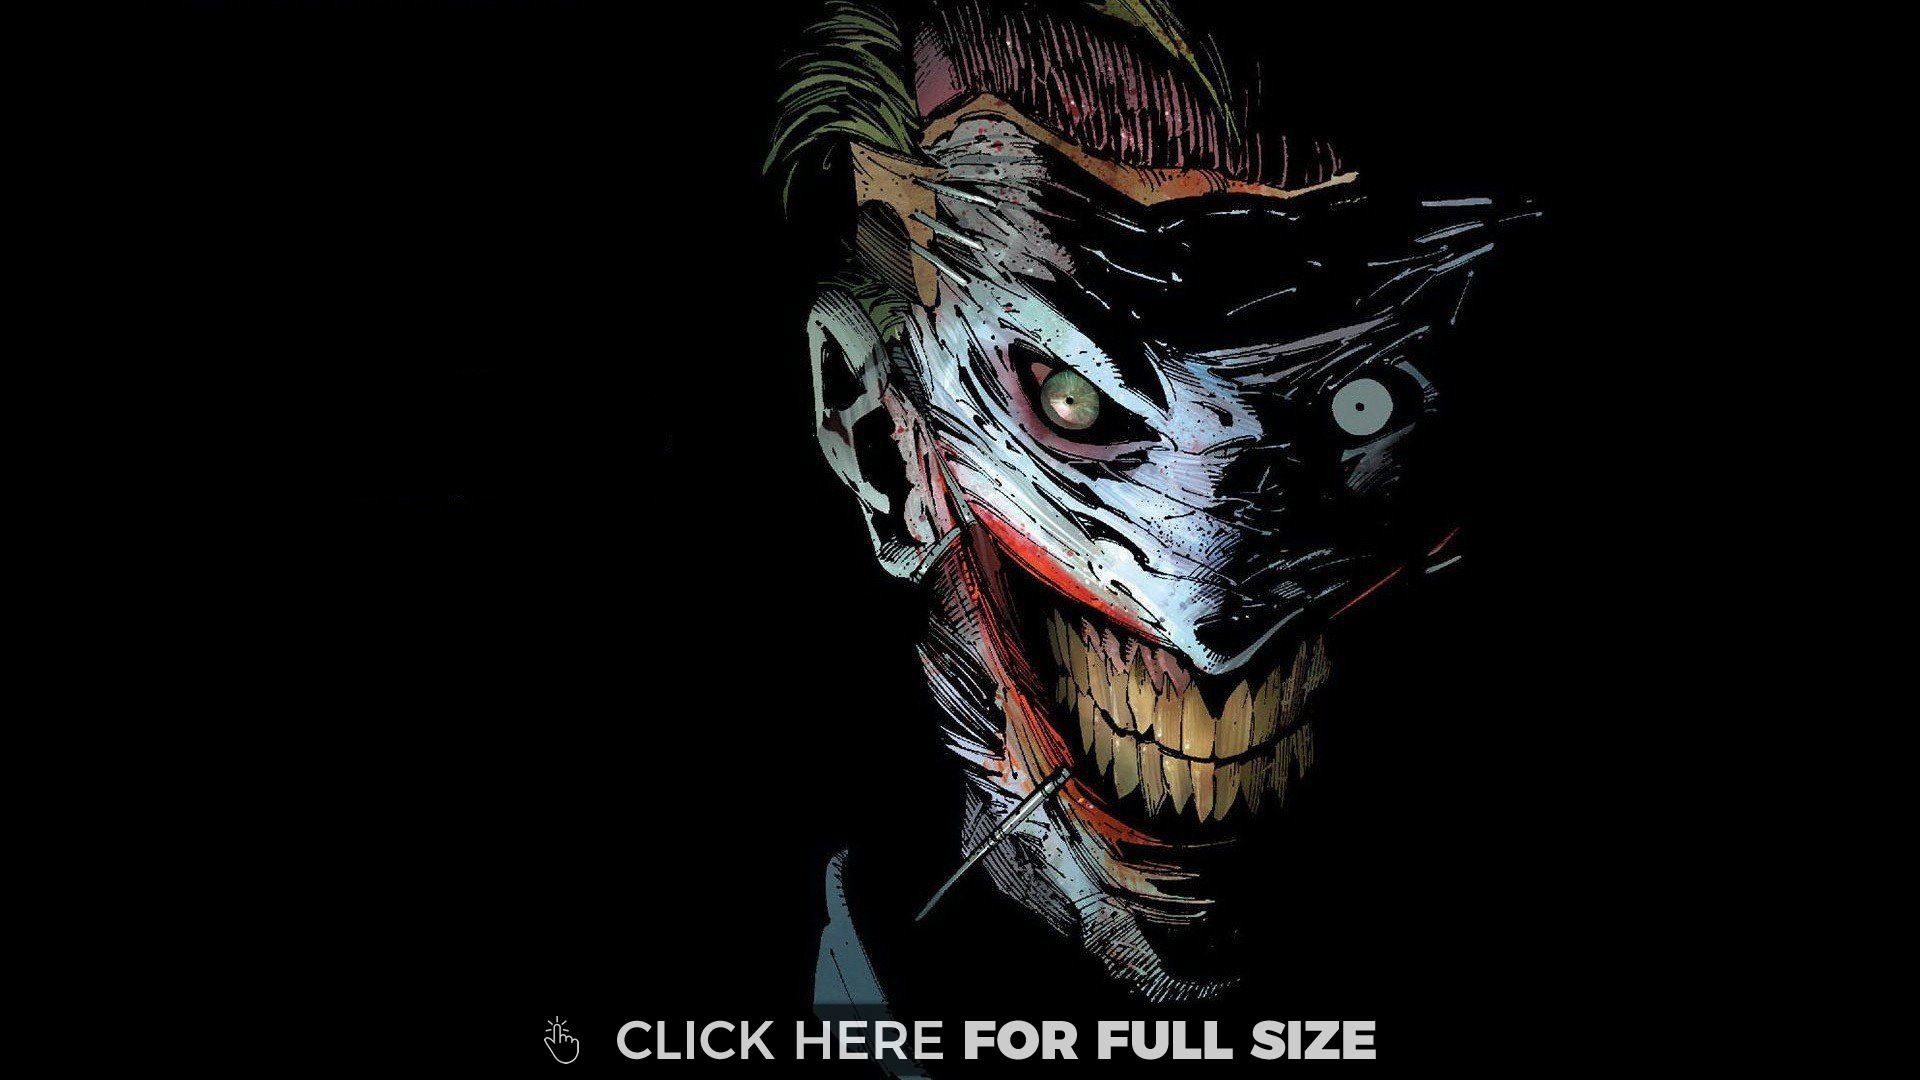 1920x1080 Batman DC Comics The Joker Wallpaper. The evil joker looks extremely  sinister in this dark wallpaper.